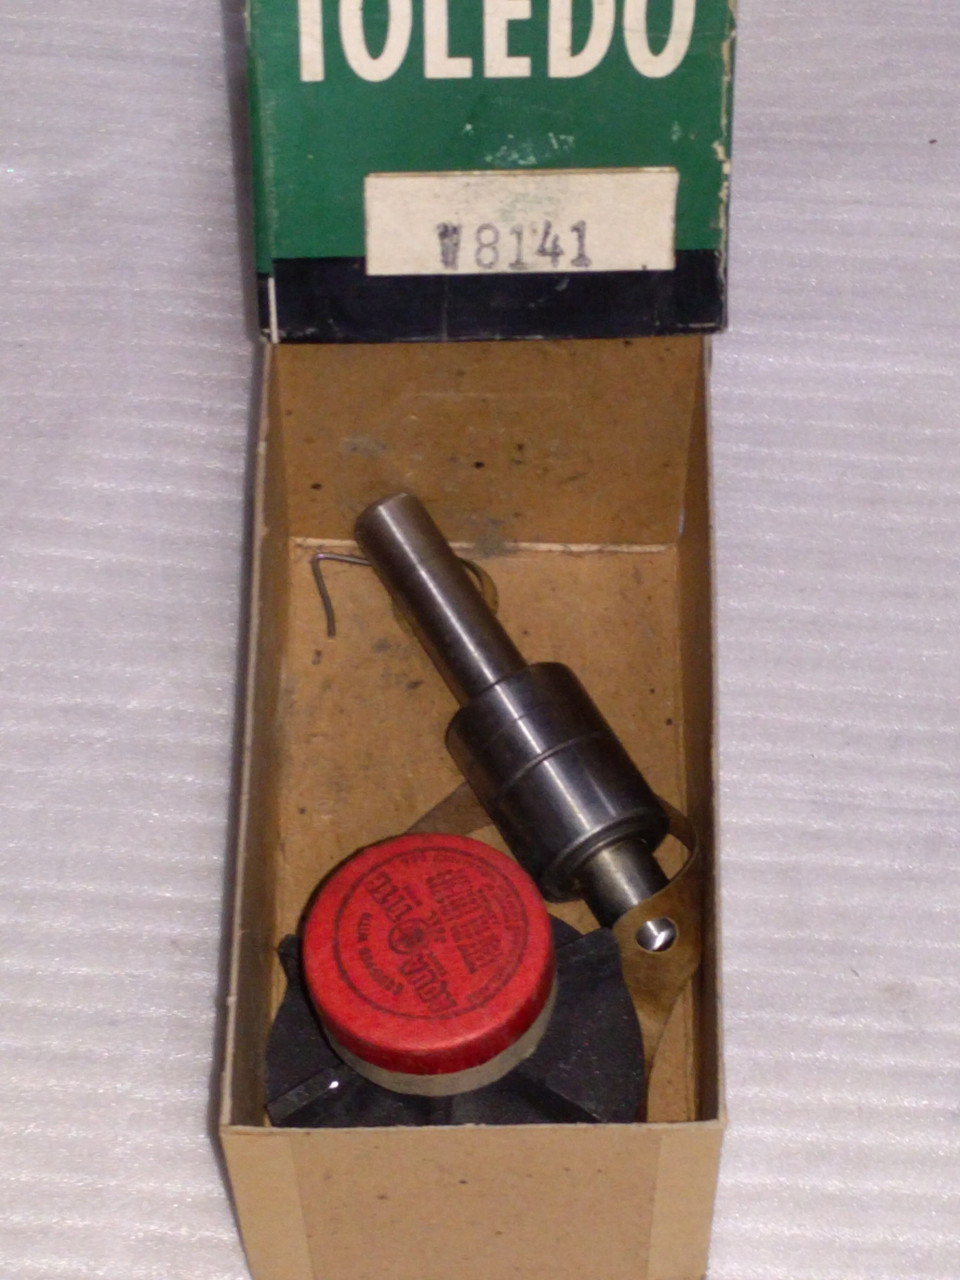 Toledo Water Pump Repair Kit Part No.:  W8141